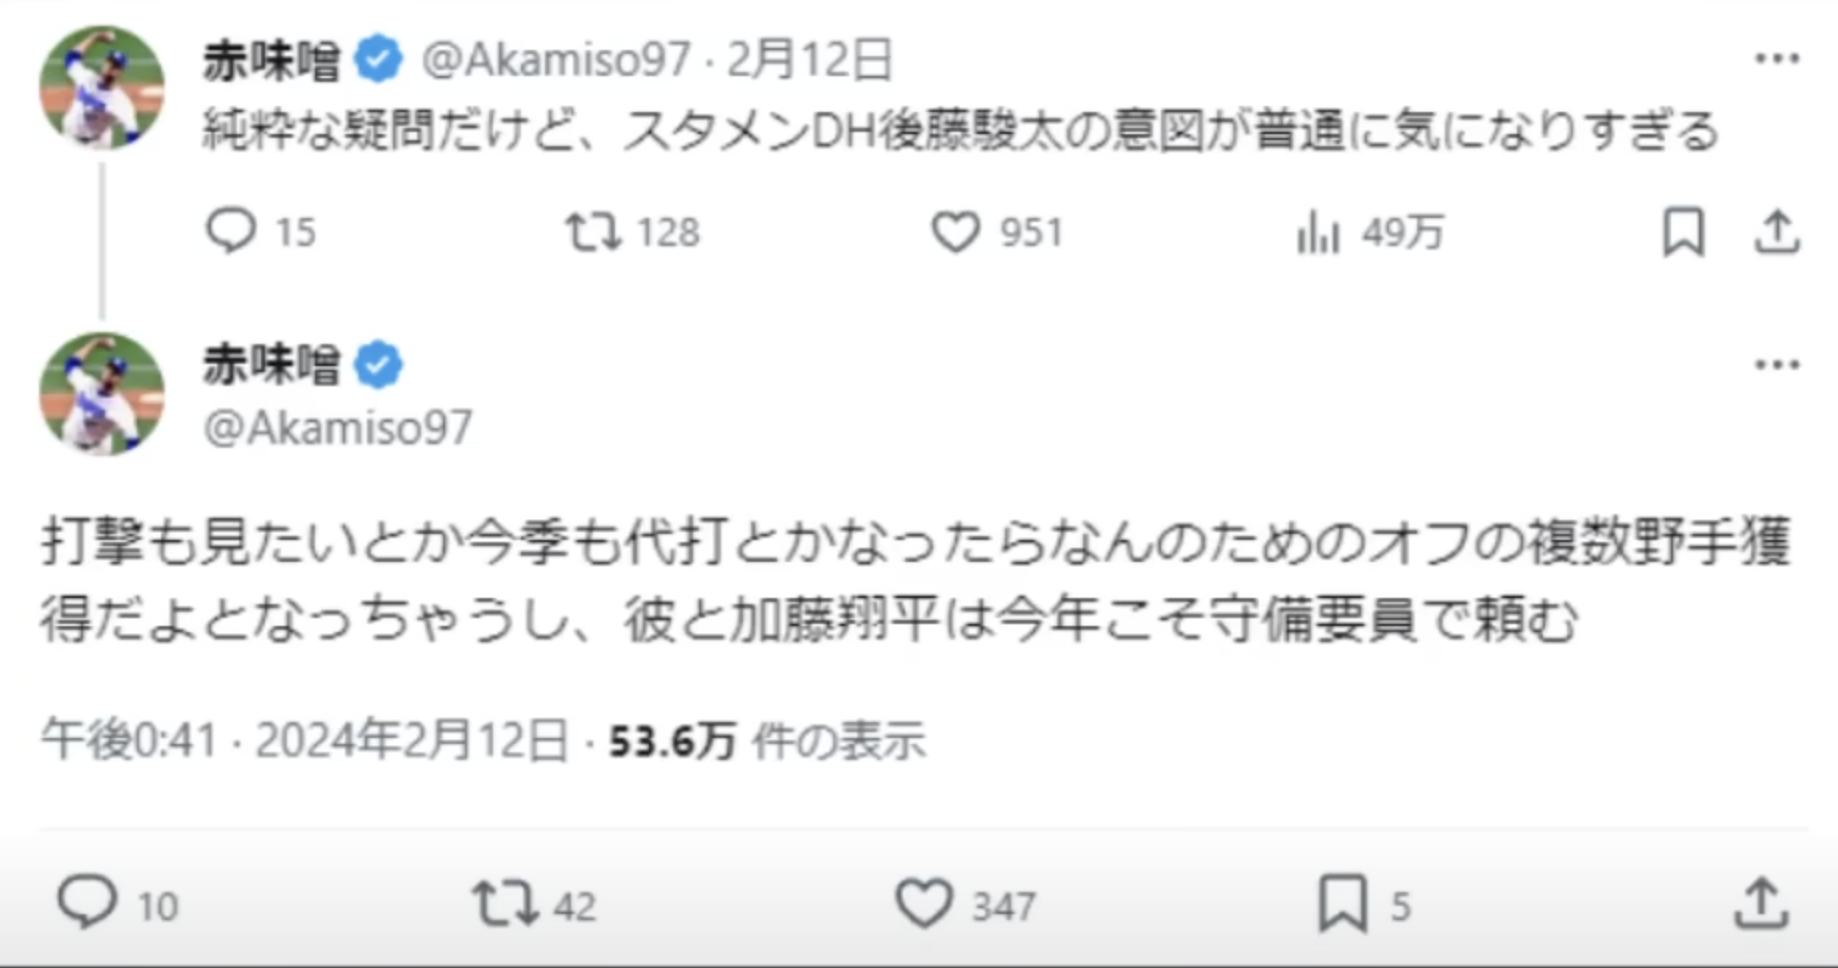 なぜ、このちなヤク＝赤味噌のつながりが明るみになったかというと、中日に所属している後藤駿太選手に対して、練習試合にてDHで起用されたことにTwitter(X)で疑問を呈したことがきっかけ。